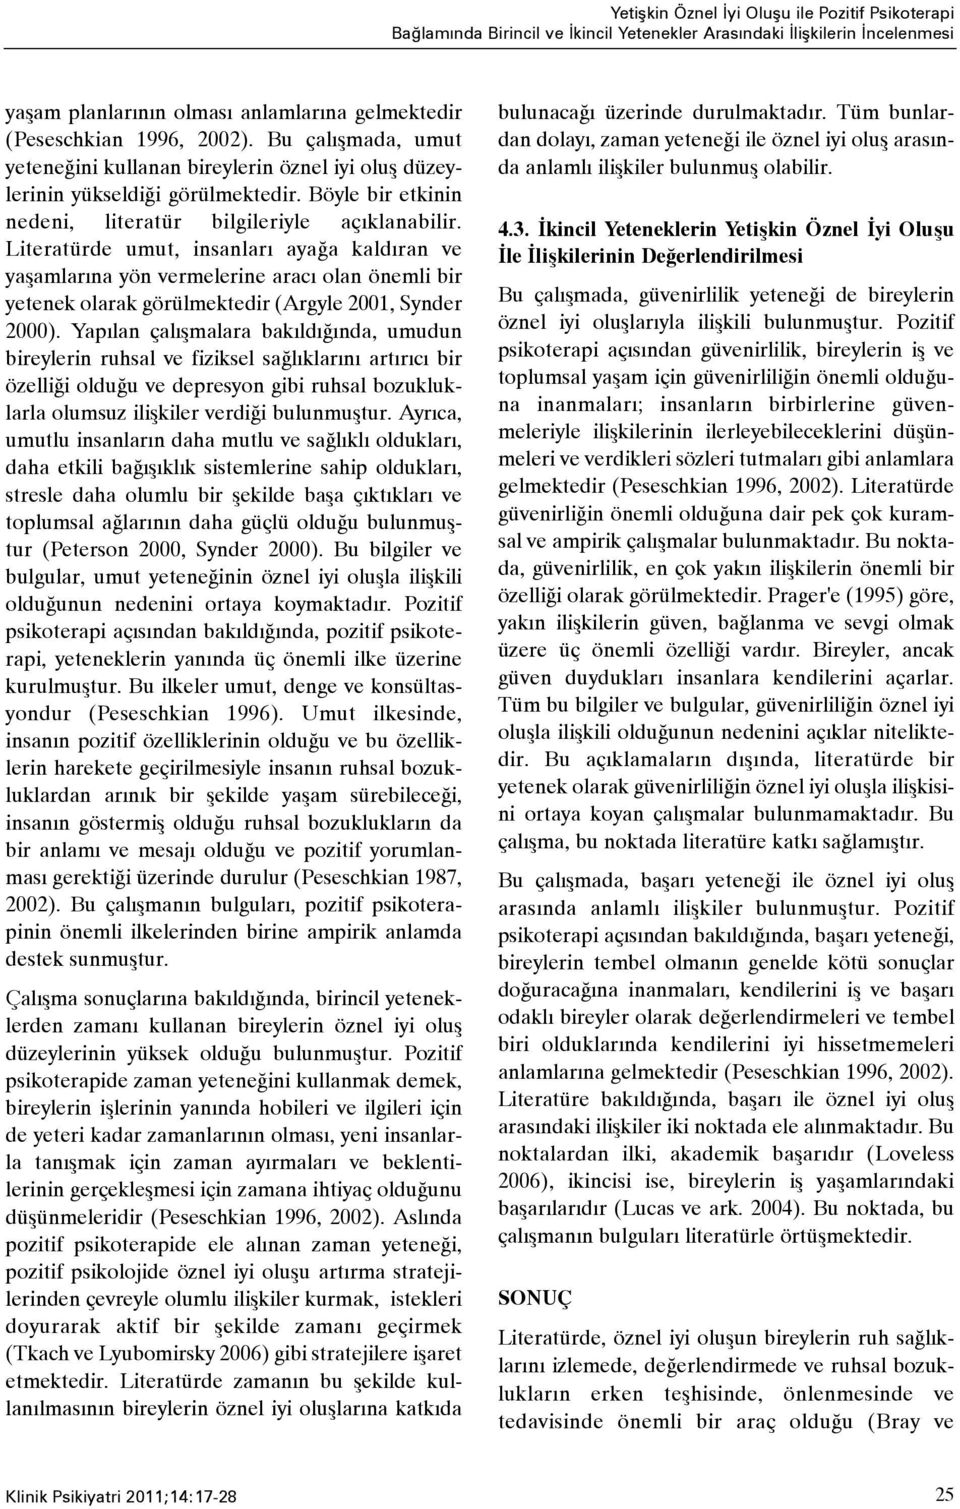 Literatürde umut, insanlarý ayaða kaldýran ve yaþamlarýna yön vermelerine aracý olan önemli bir yetenek olarak görülmektedir (Argyle 2001, Synder 2000).